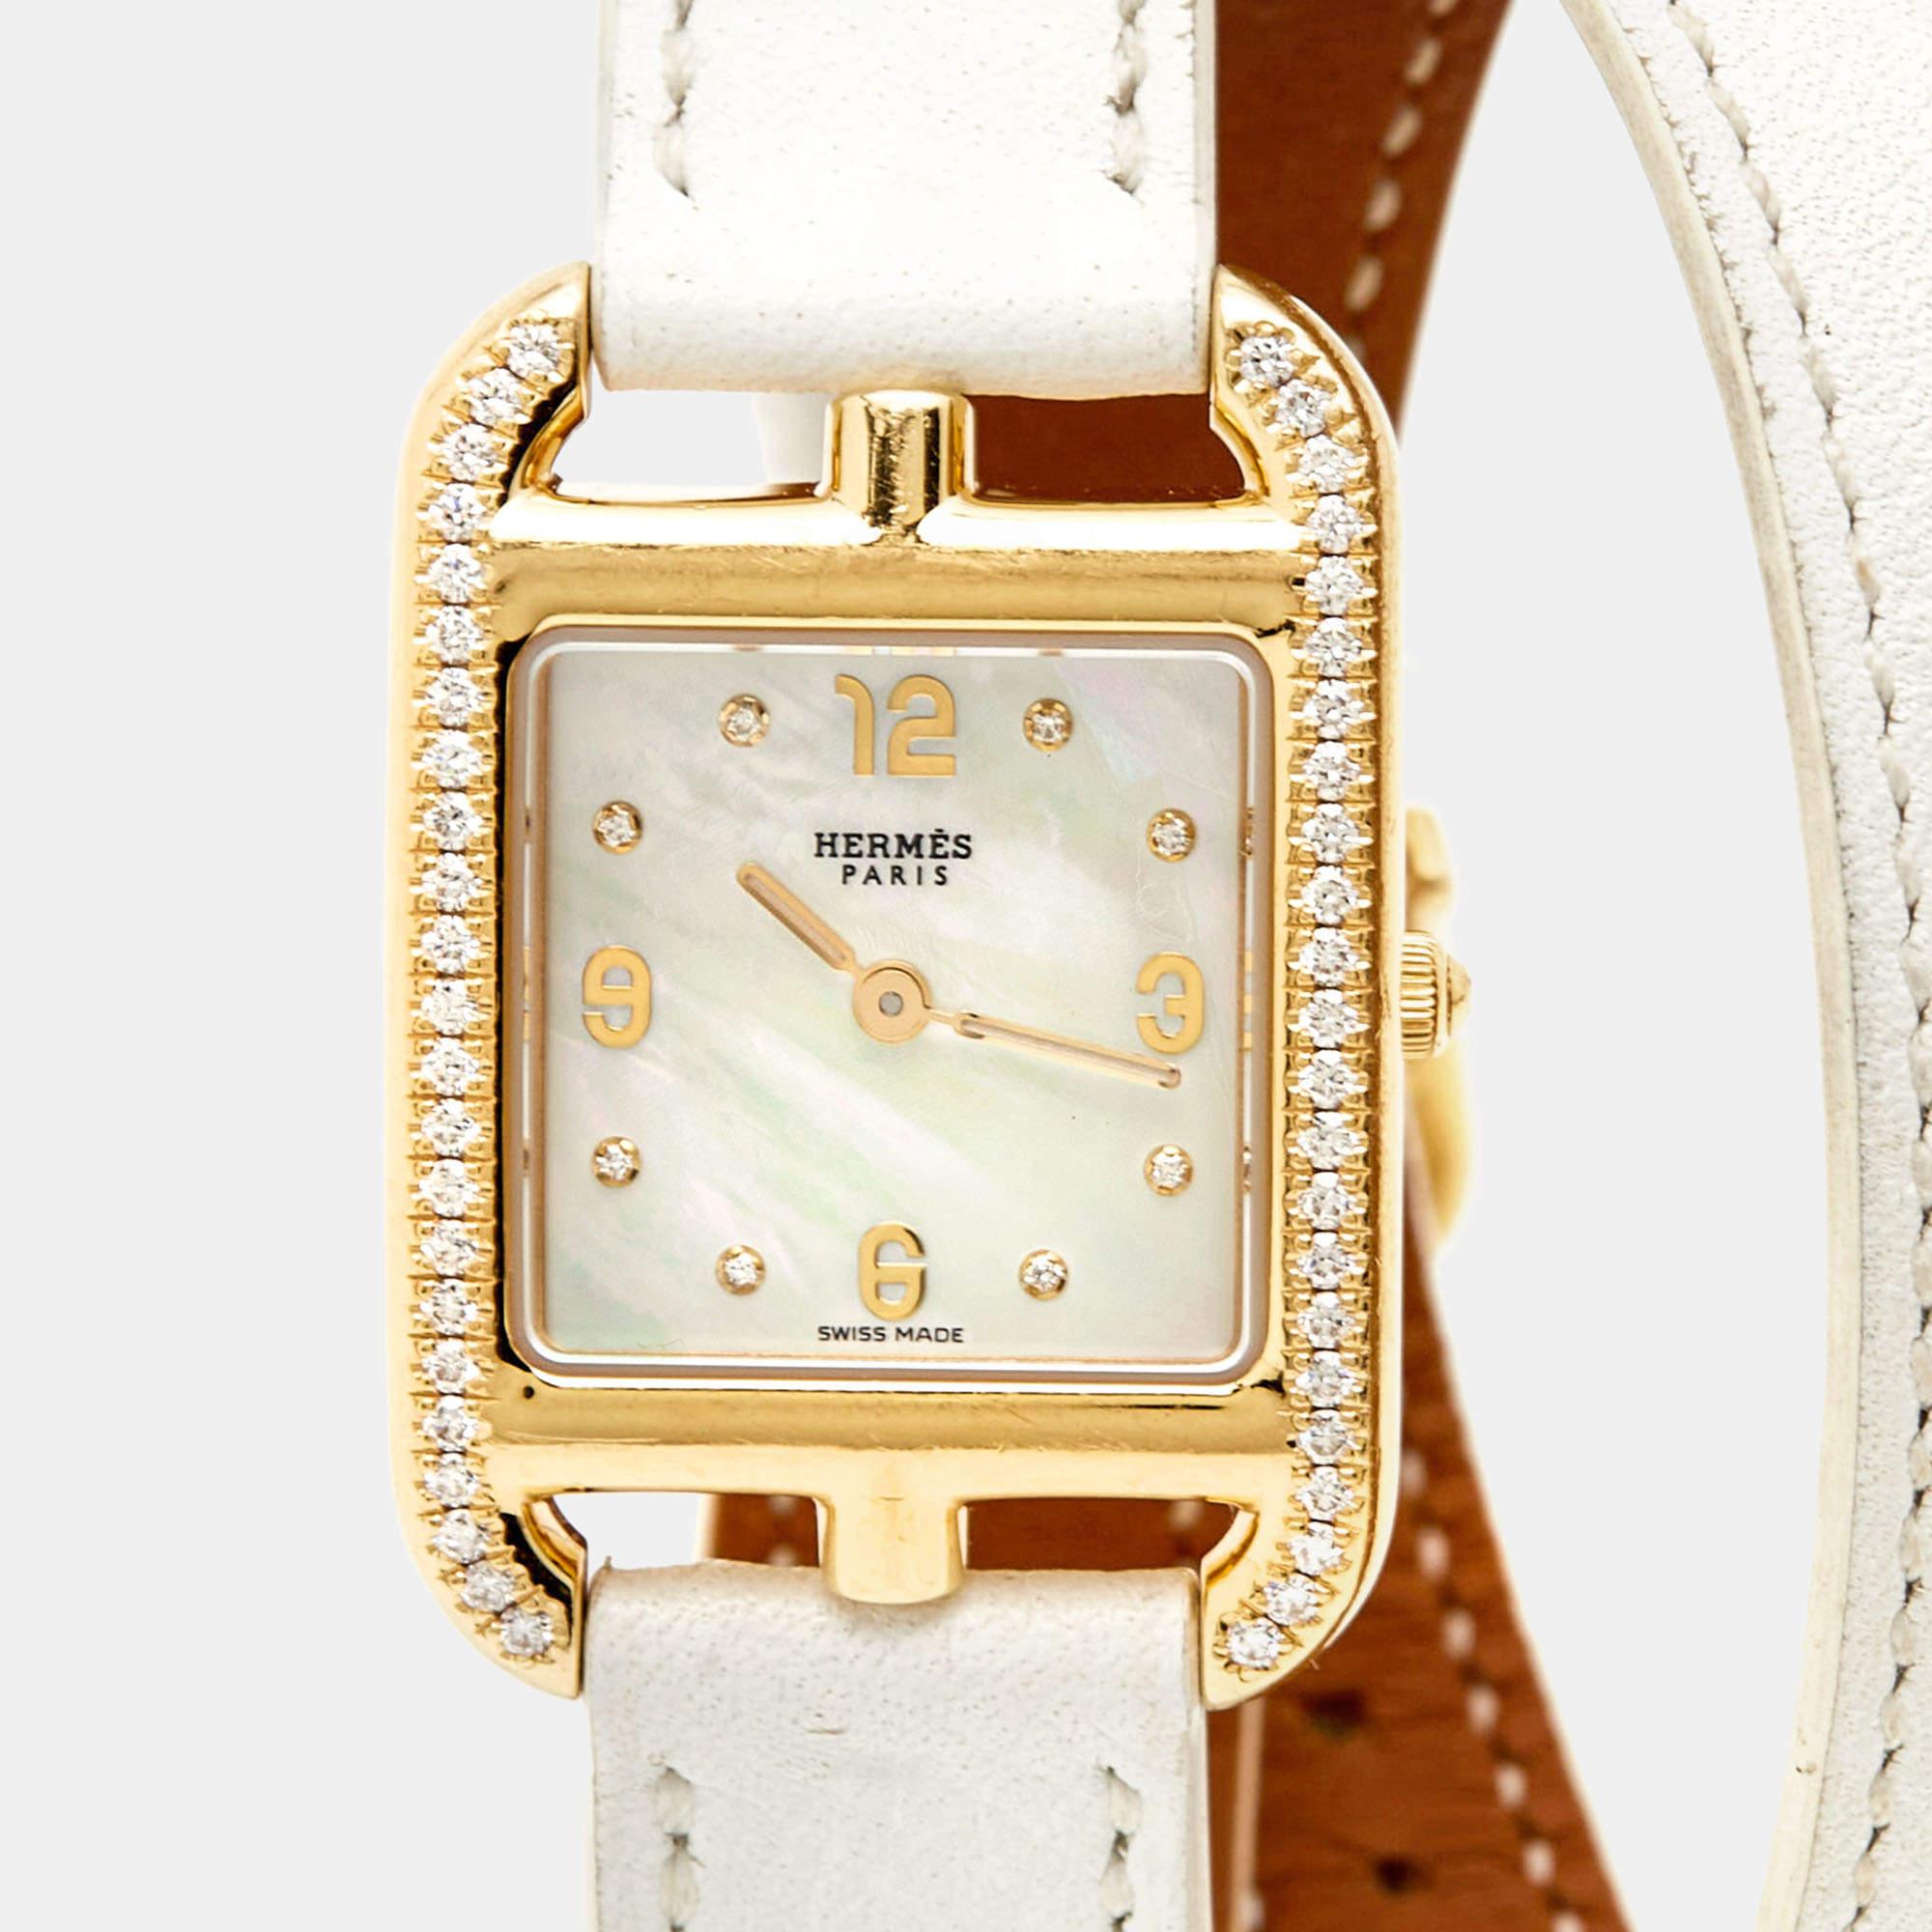 Diese Damenarmbanduhr von Hermes verleiht Ihrem Alltagsstil einen luxuriösen Touch. Sie ist aus 18 Karat Gelbgold gefertigt und verfügt über ein Perlmuttzifferblatt und die perfekte Ergänzung durch Diamanten, die ihre Schönheit unterstreichen. Die